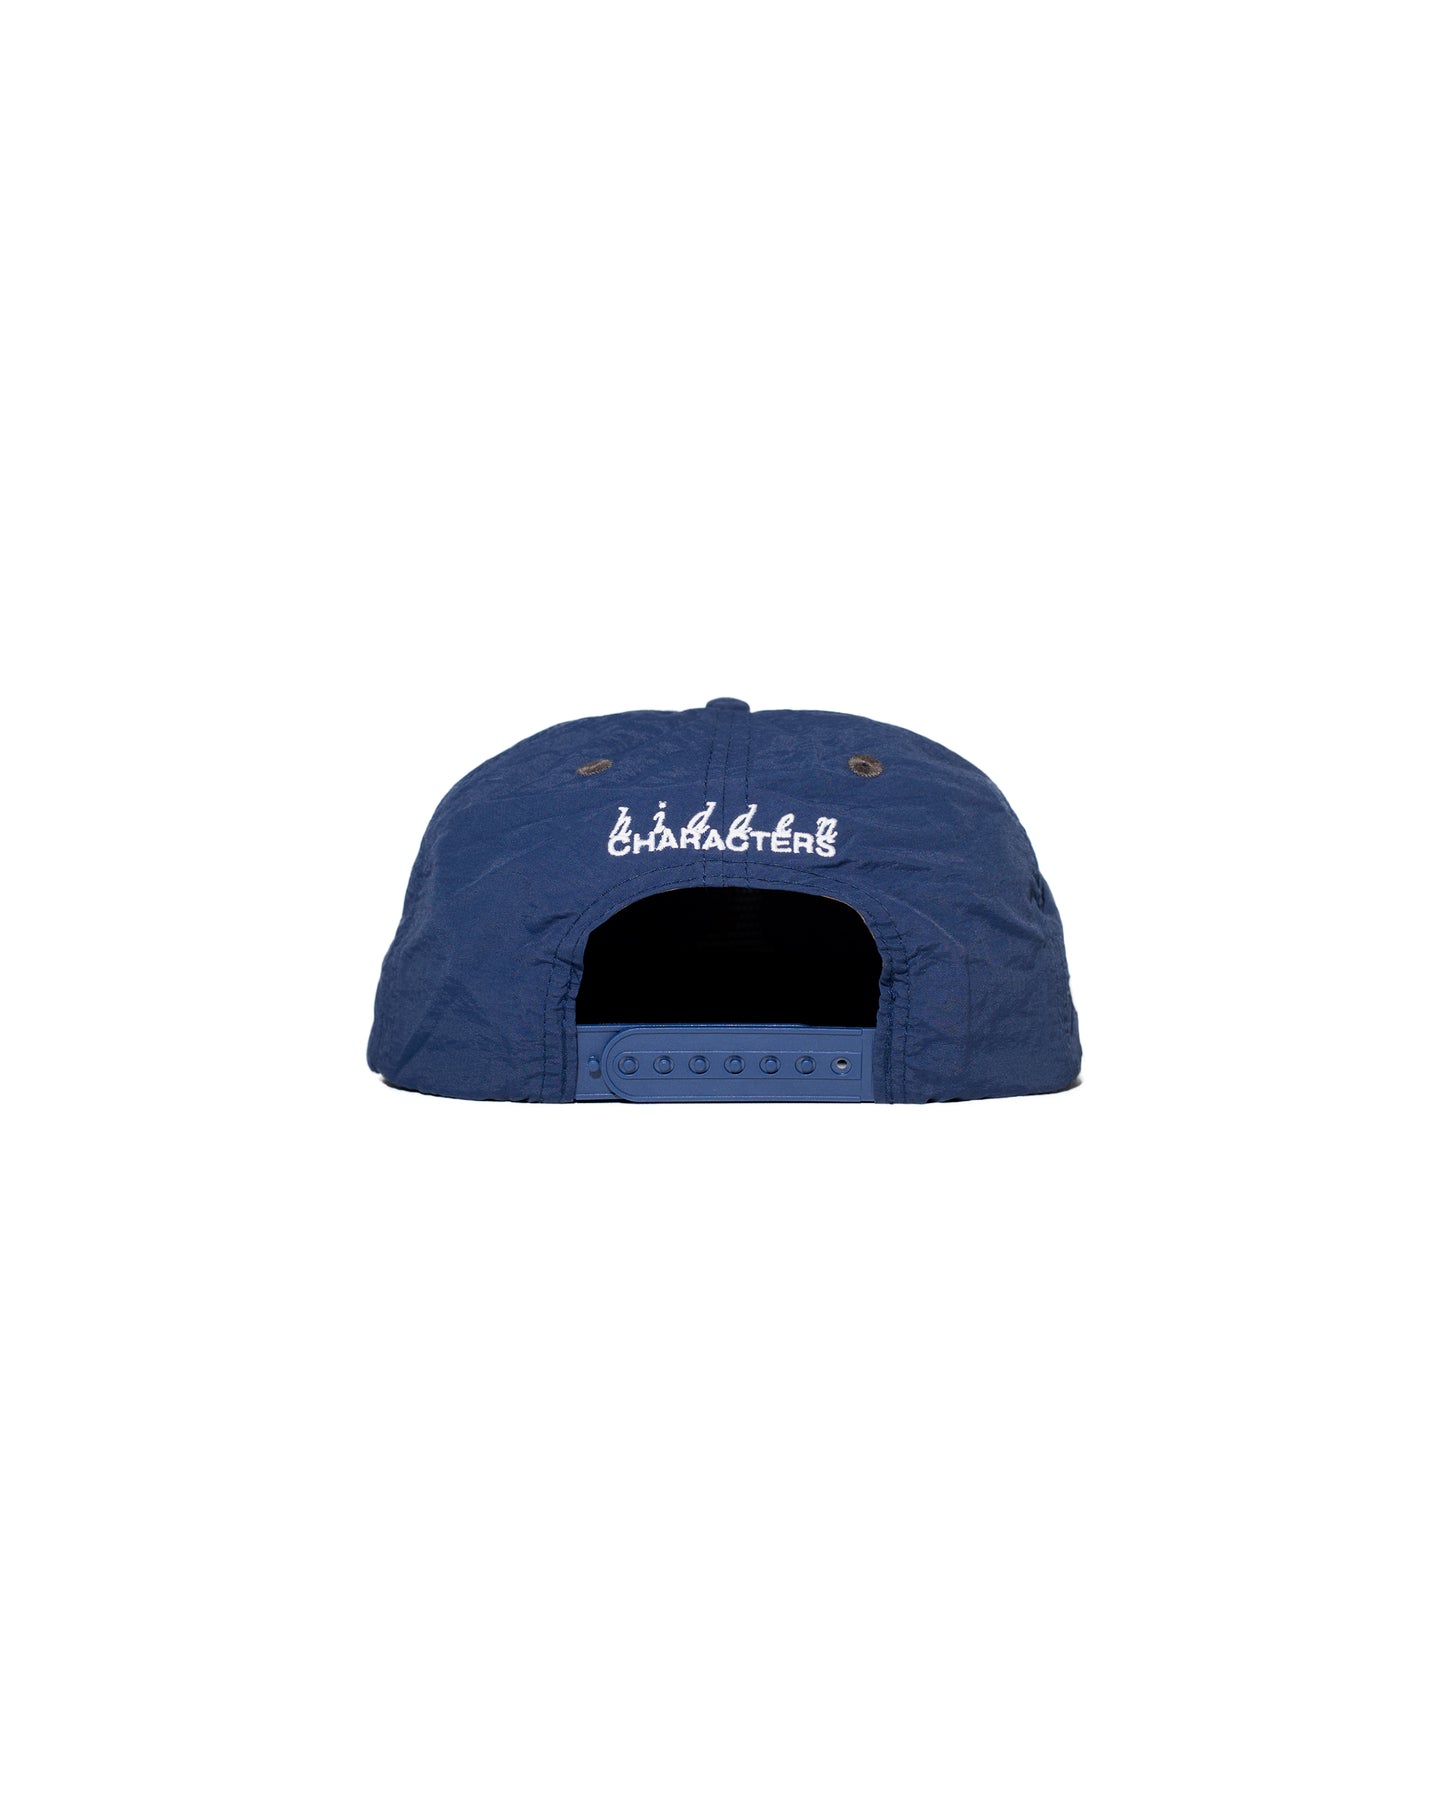 MALEFICENT HAT [NAVY BLUE]